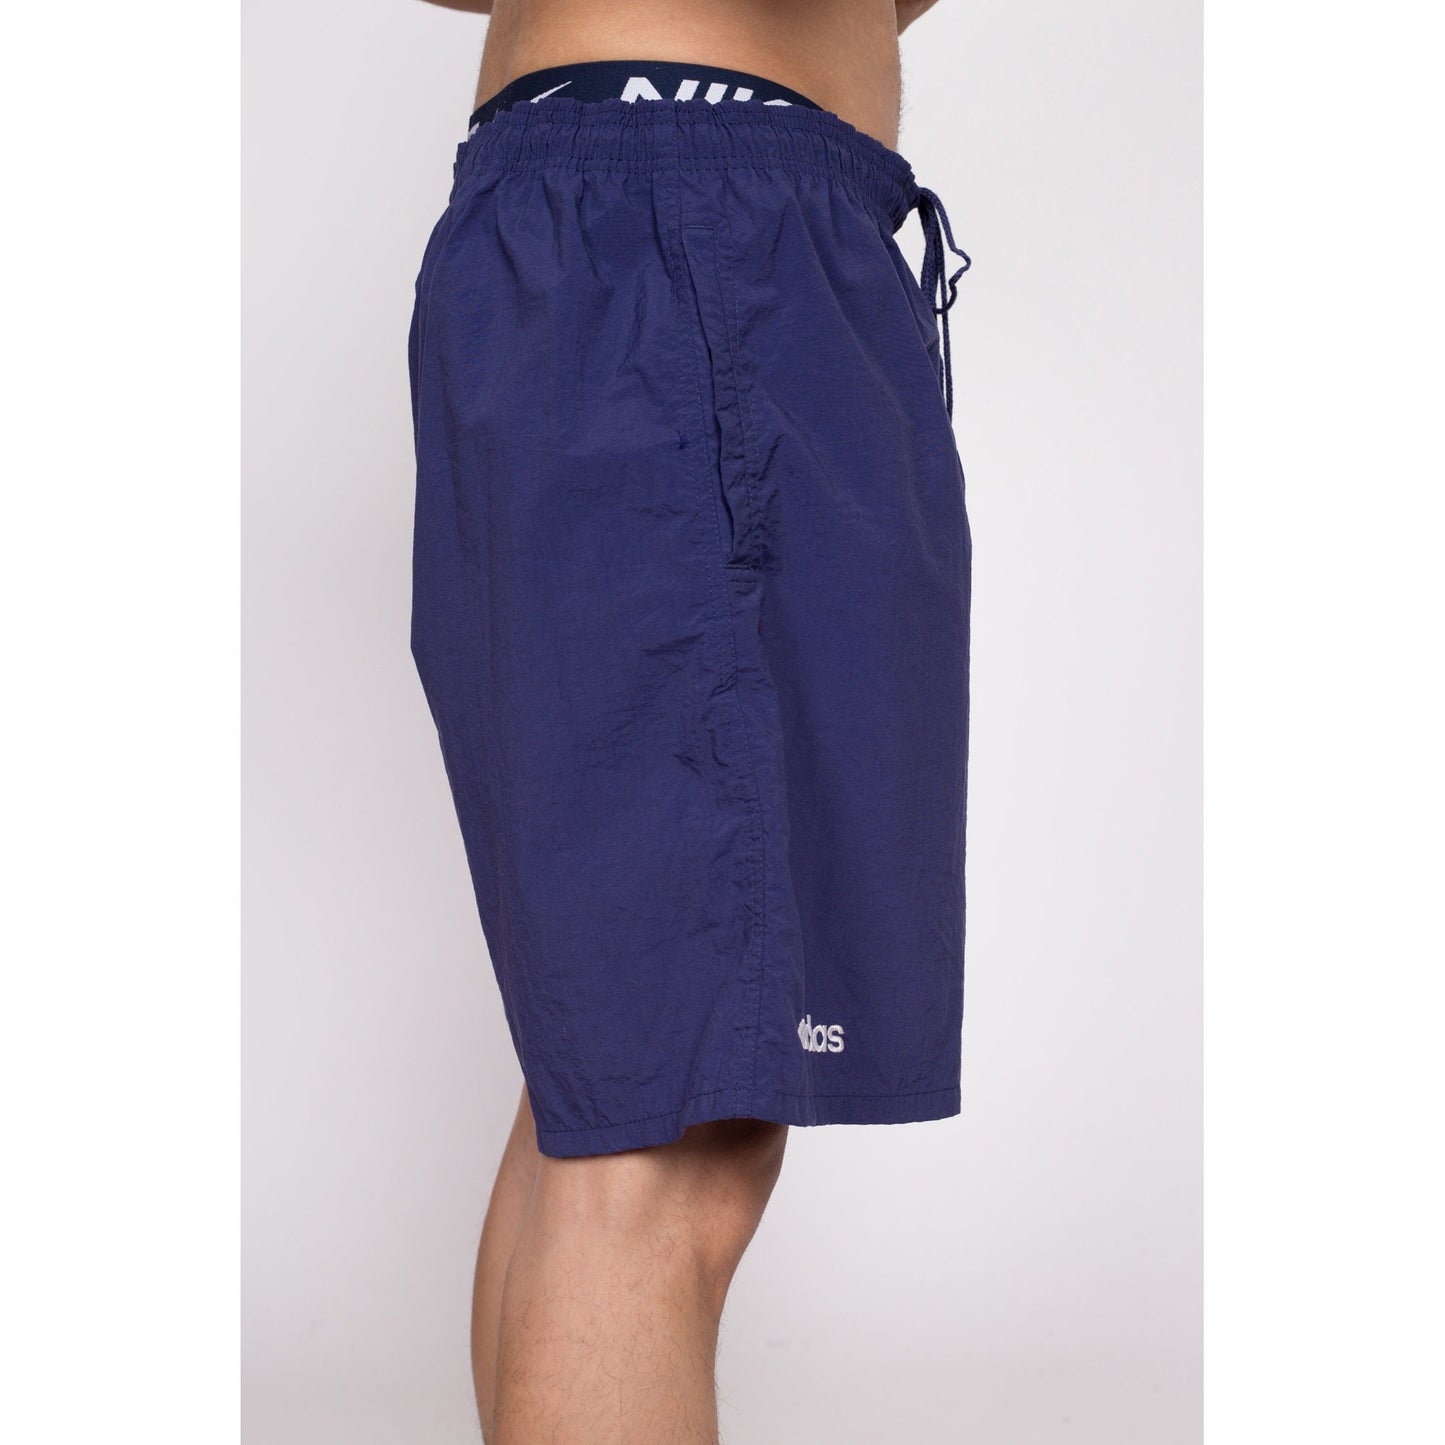 Plus Size Blue Adidas Shorts . 90s Sports Shorts Running Shorts